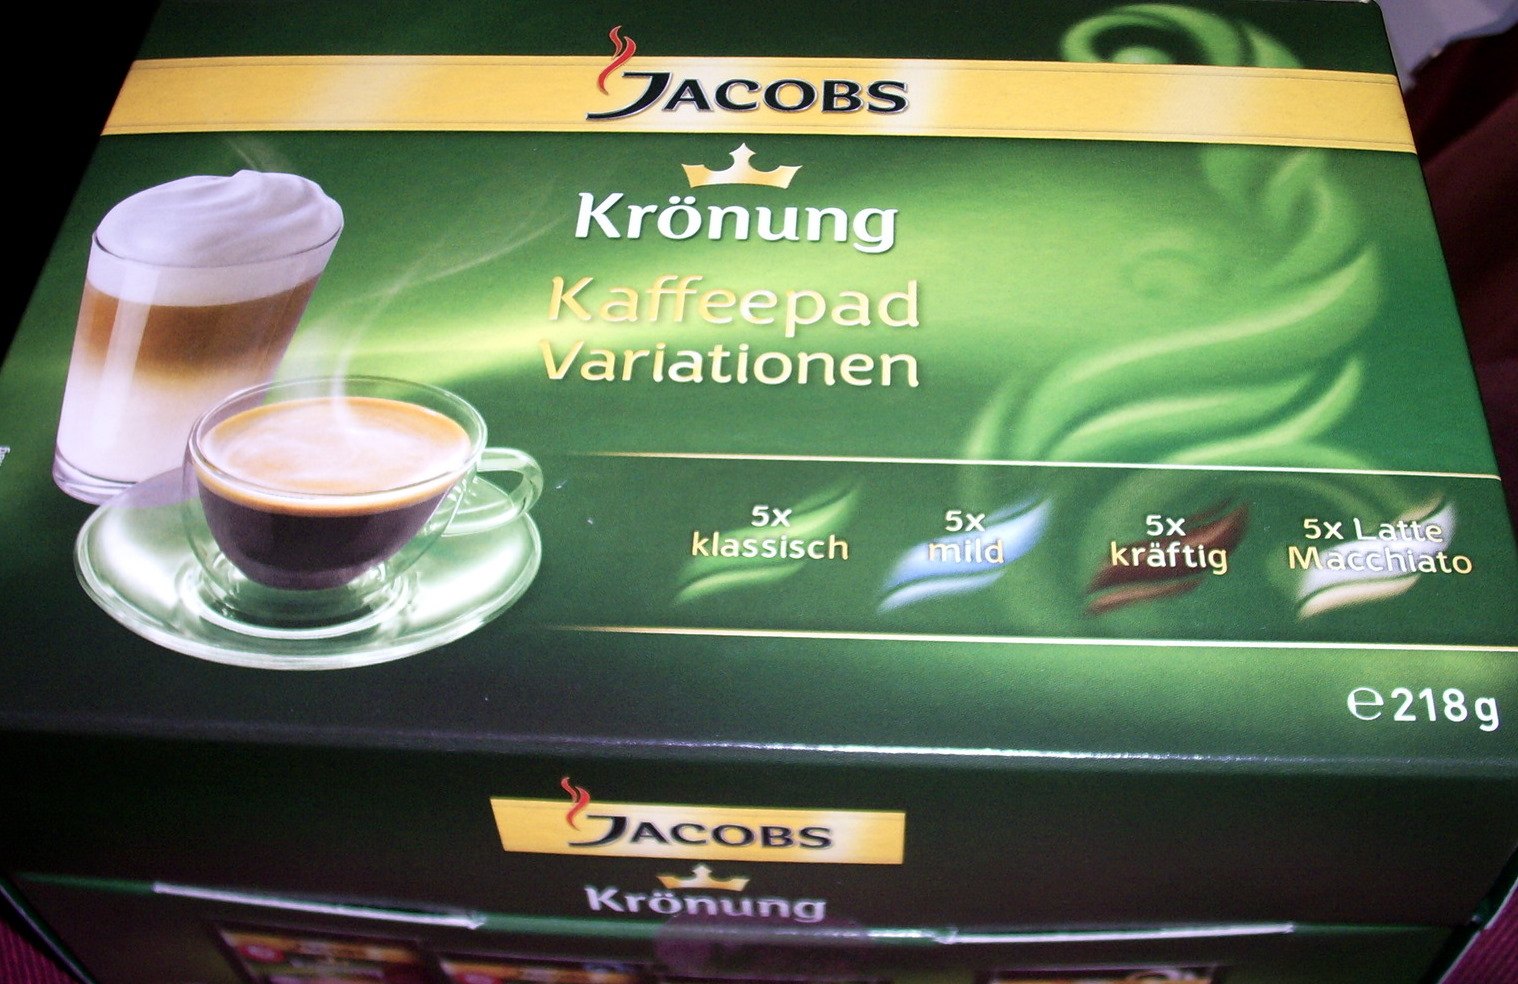 Kaffeepause: Gewinnt eine Packung Jacobs Krönung Kaffeepad Variationen